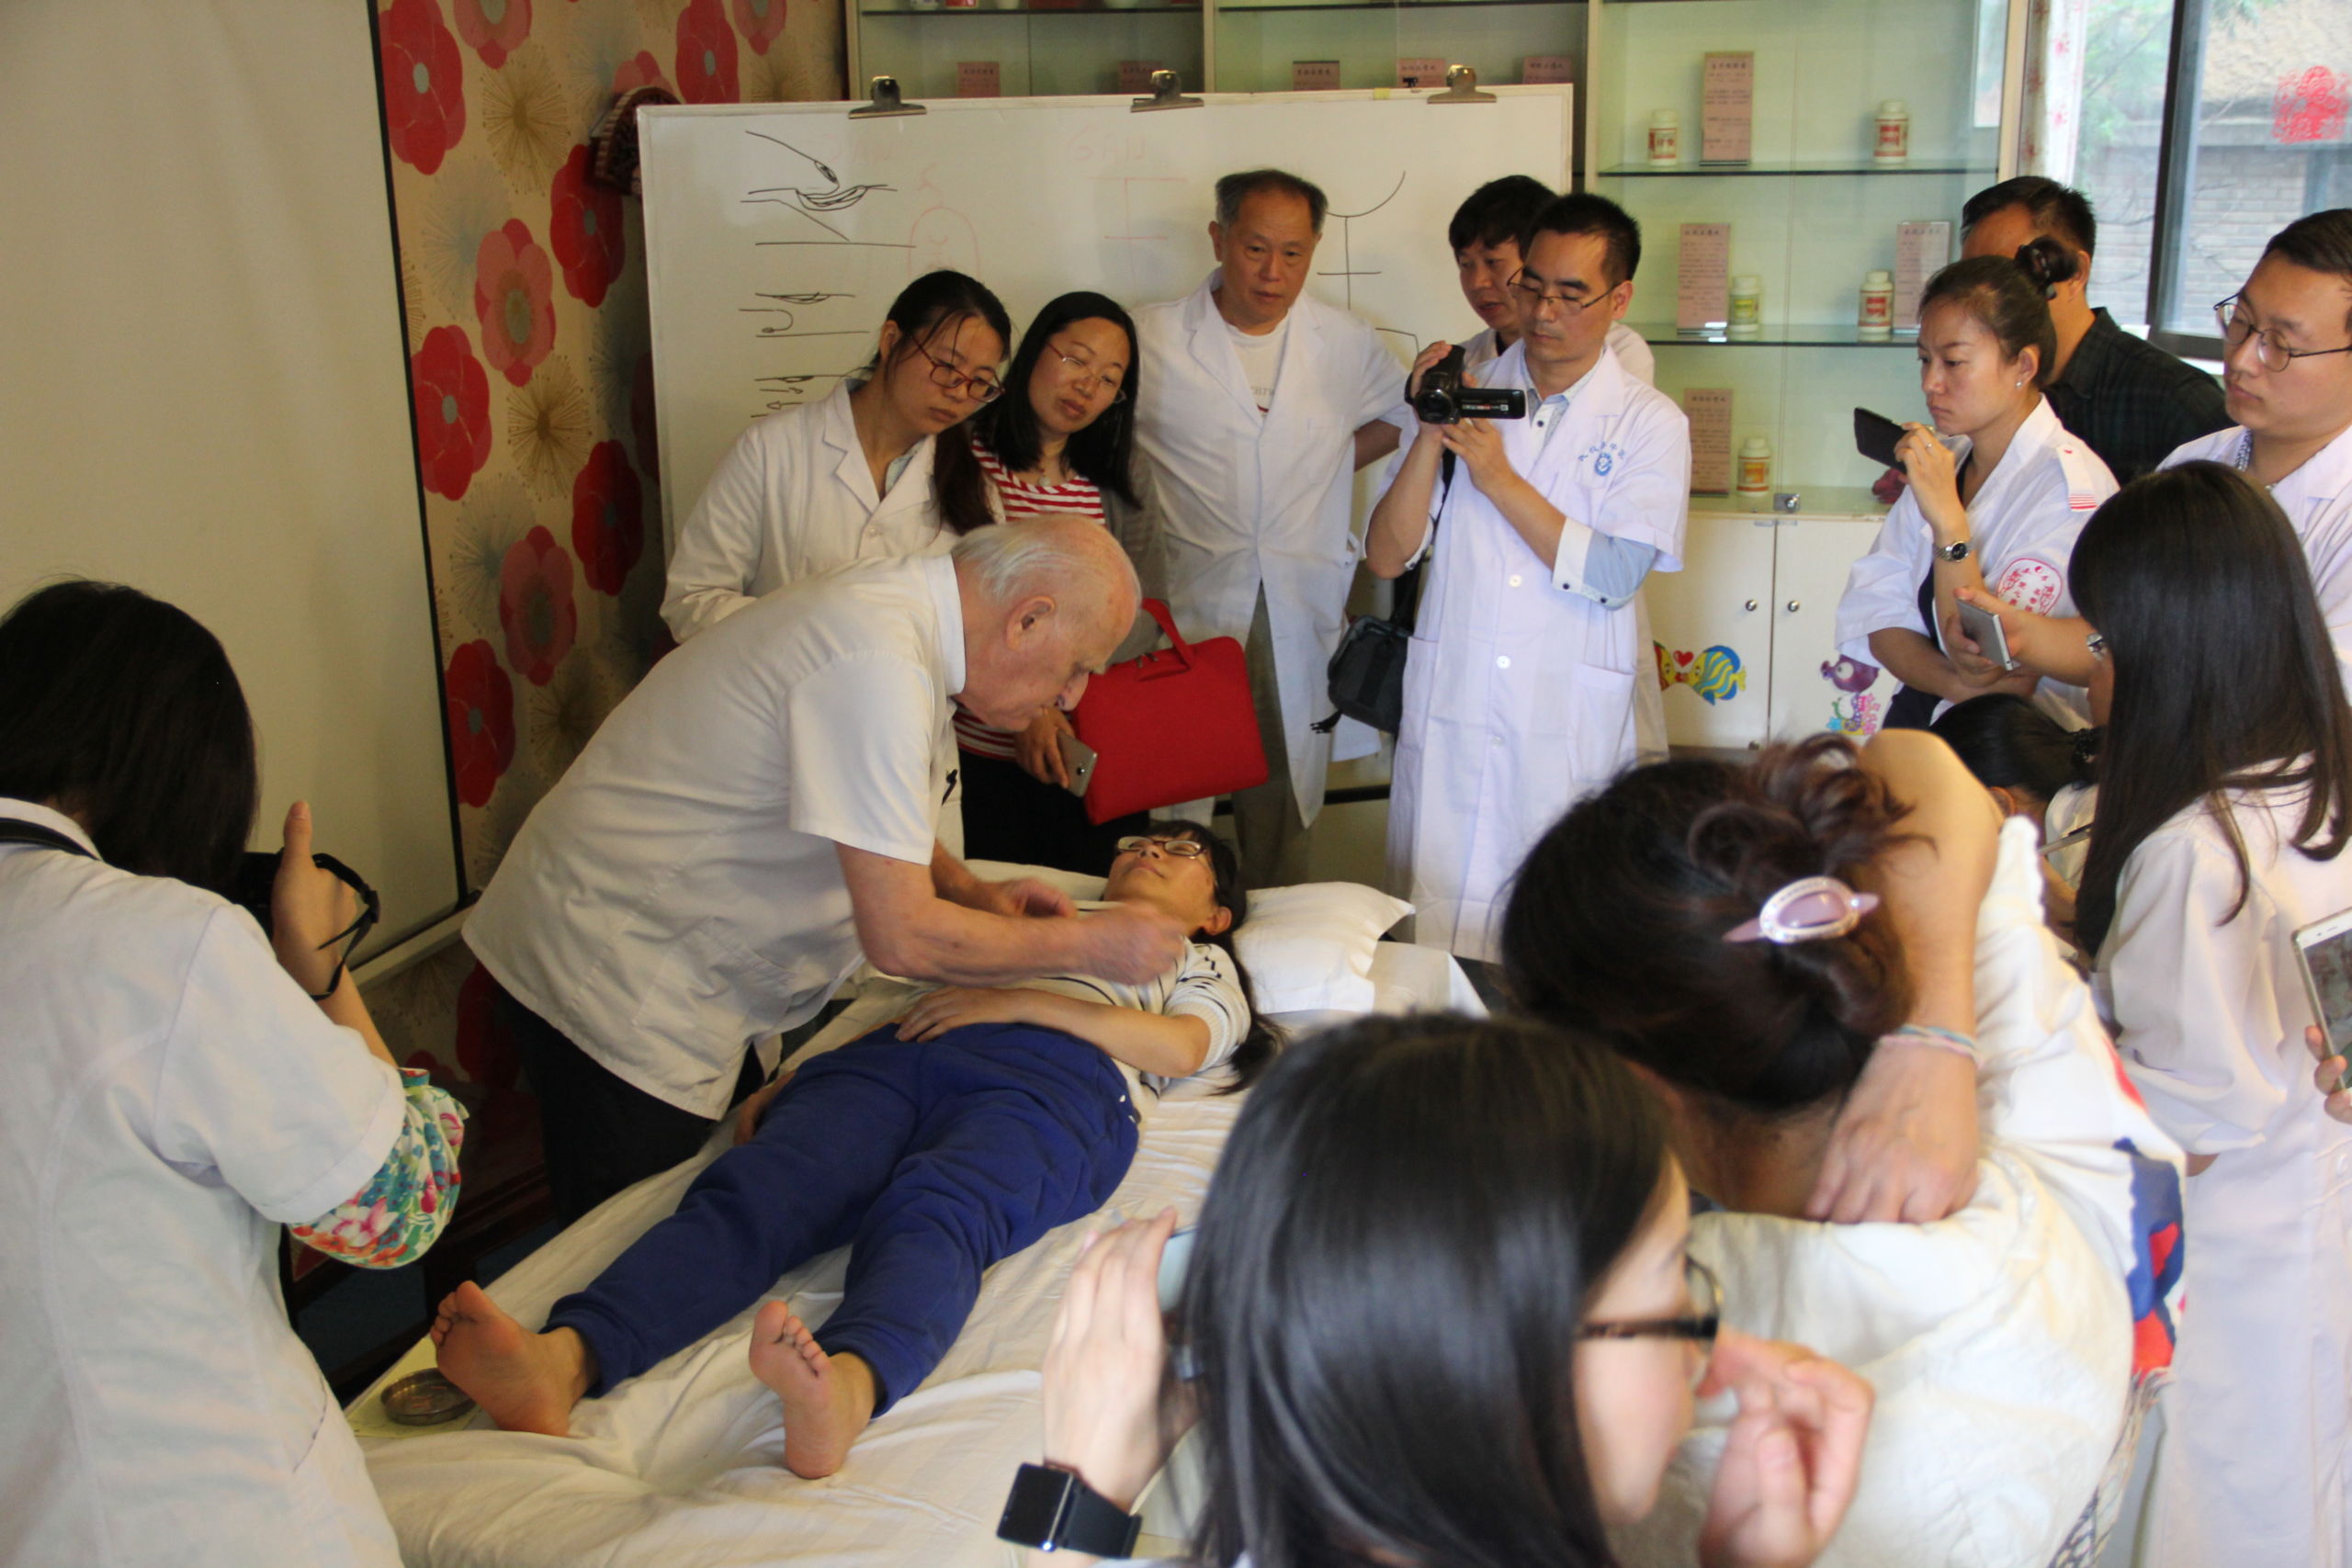 Image 5 - Séminaire en Chine - MOC MCA - Médecine Chinoise Ancienne & Occidentale Classique - Moka Enseignement